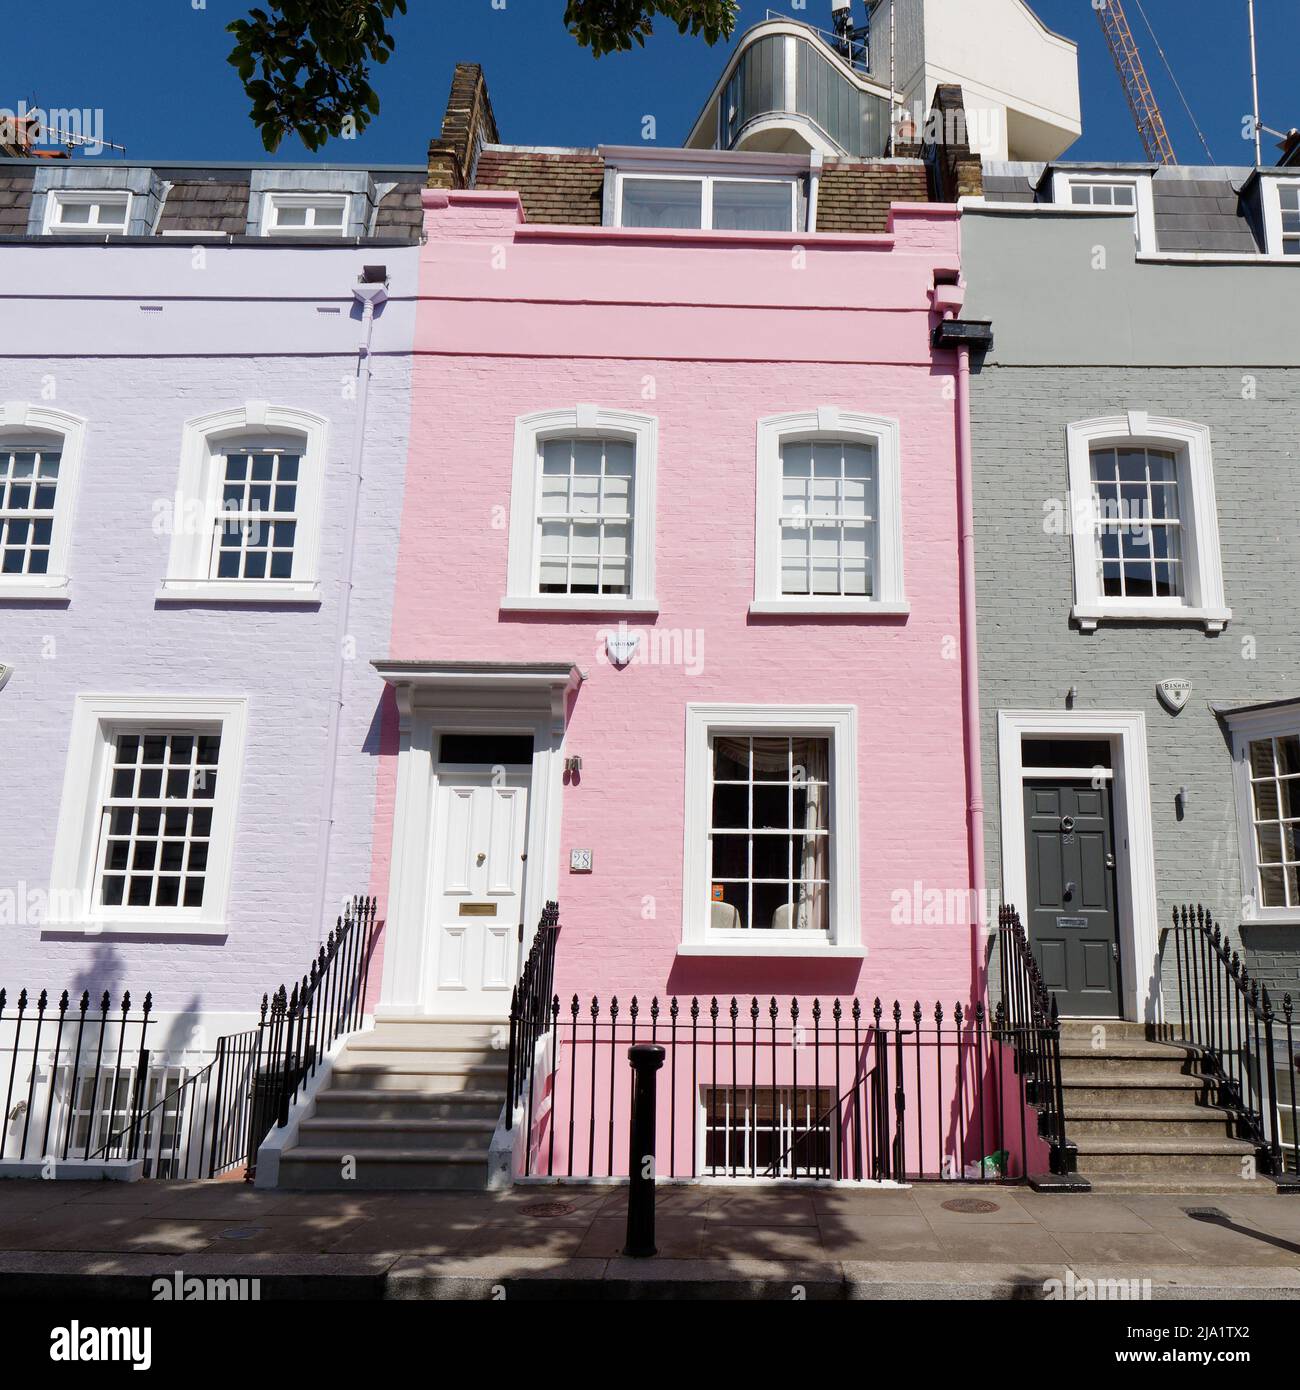 Londres, Grand Londres, Angleterre, mai 14 2022 : maisons résidentielles roses, mauves et vertes juste à côté de Kings Road dans la région de Chelsea. Banque D'Images